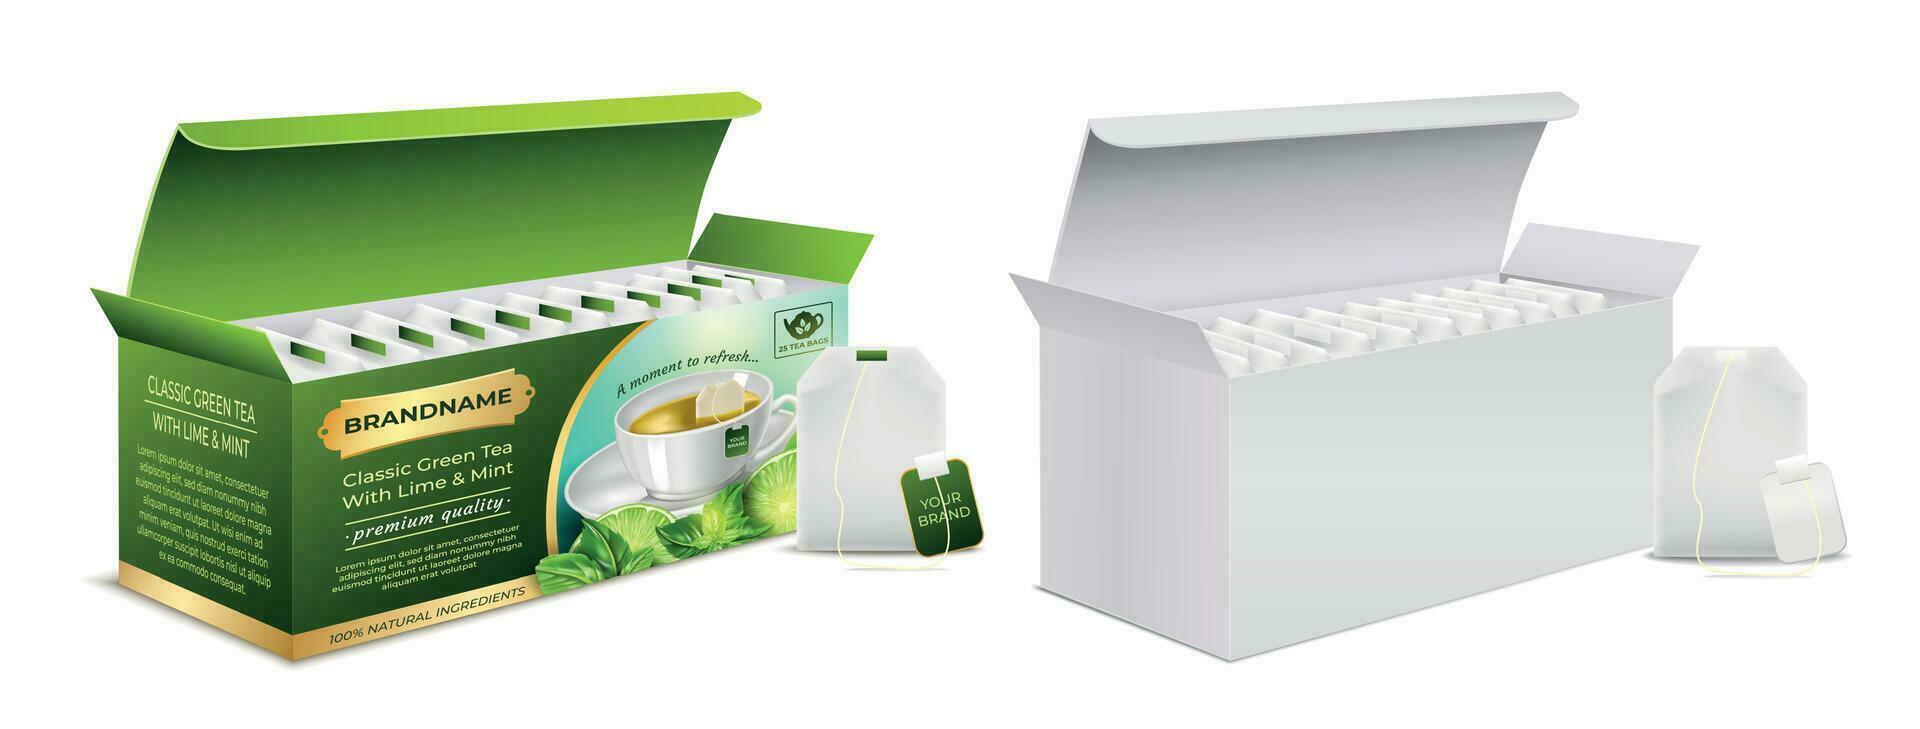 realista detallado 3d clásico verde té con Lima y menta y burlarse de arriba paquete concepto. vector